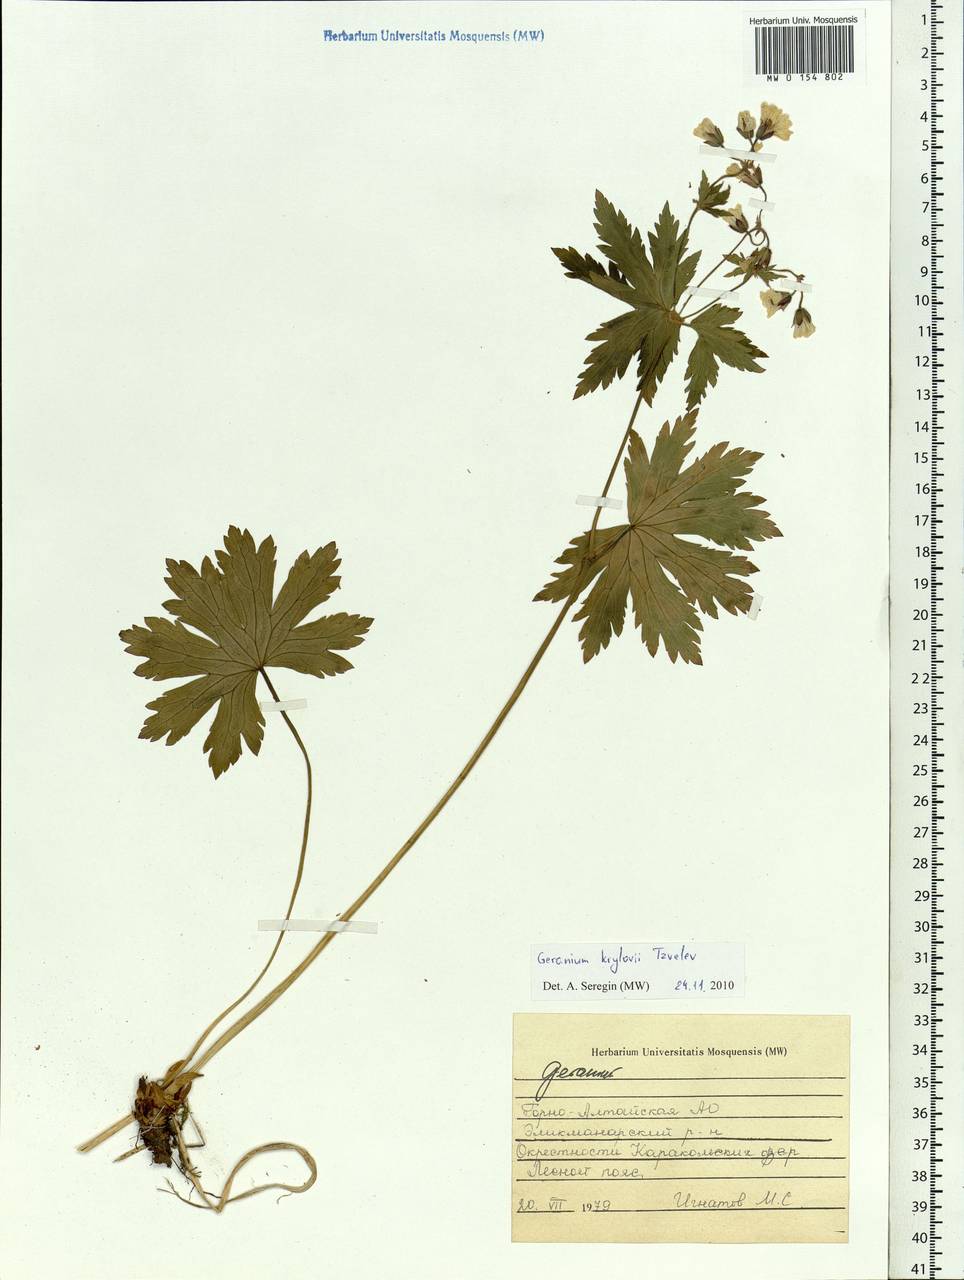 Geranium sylvaticum L., Siberia, Altai & Sayany Mountains (S2) (Russia)